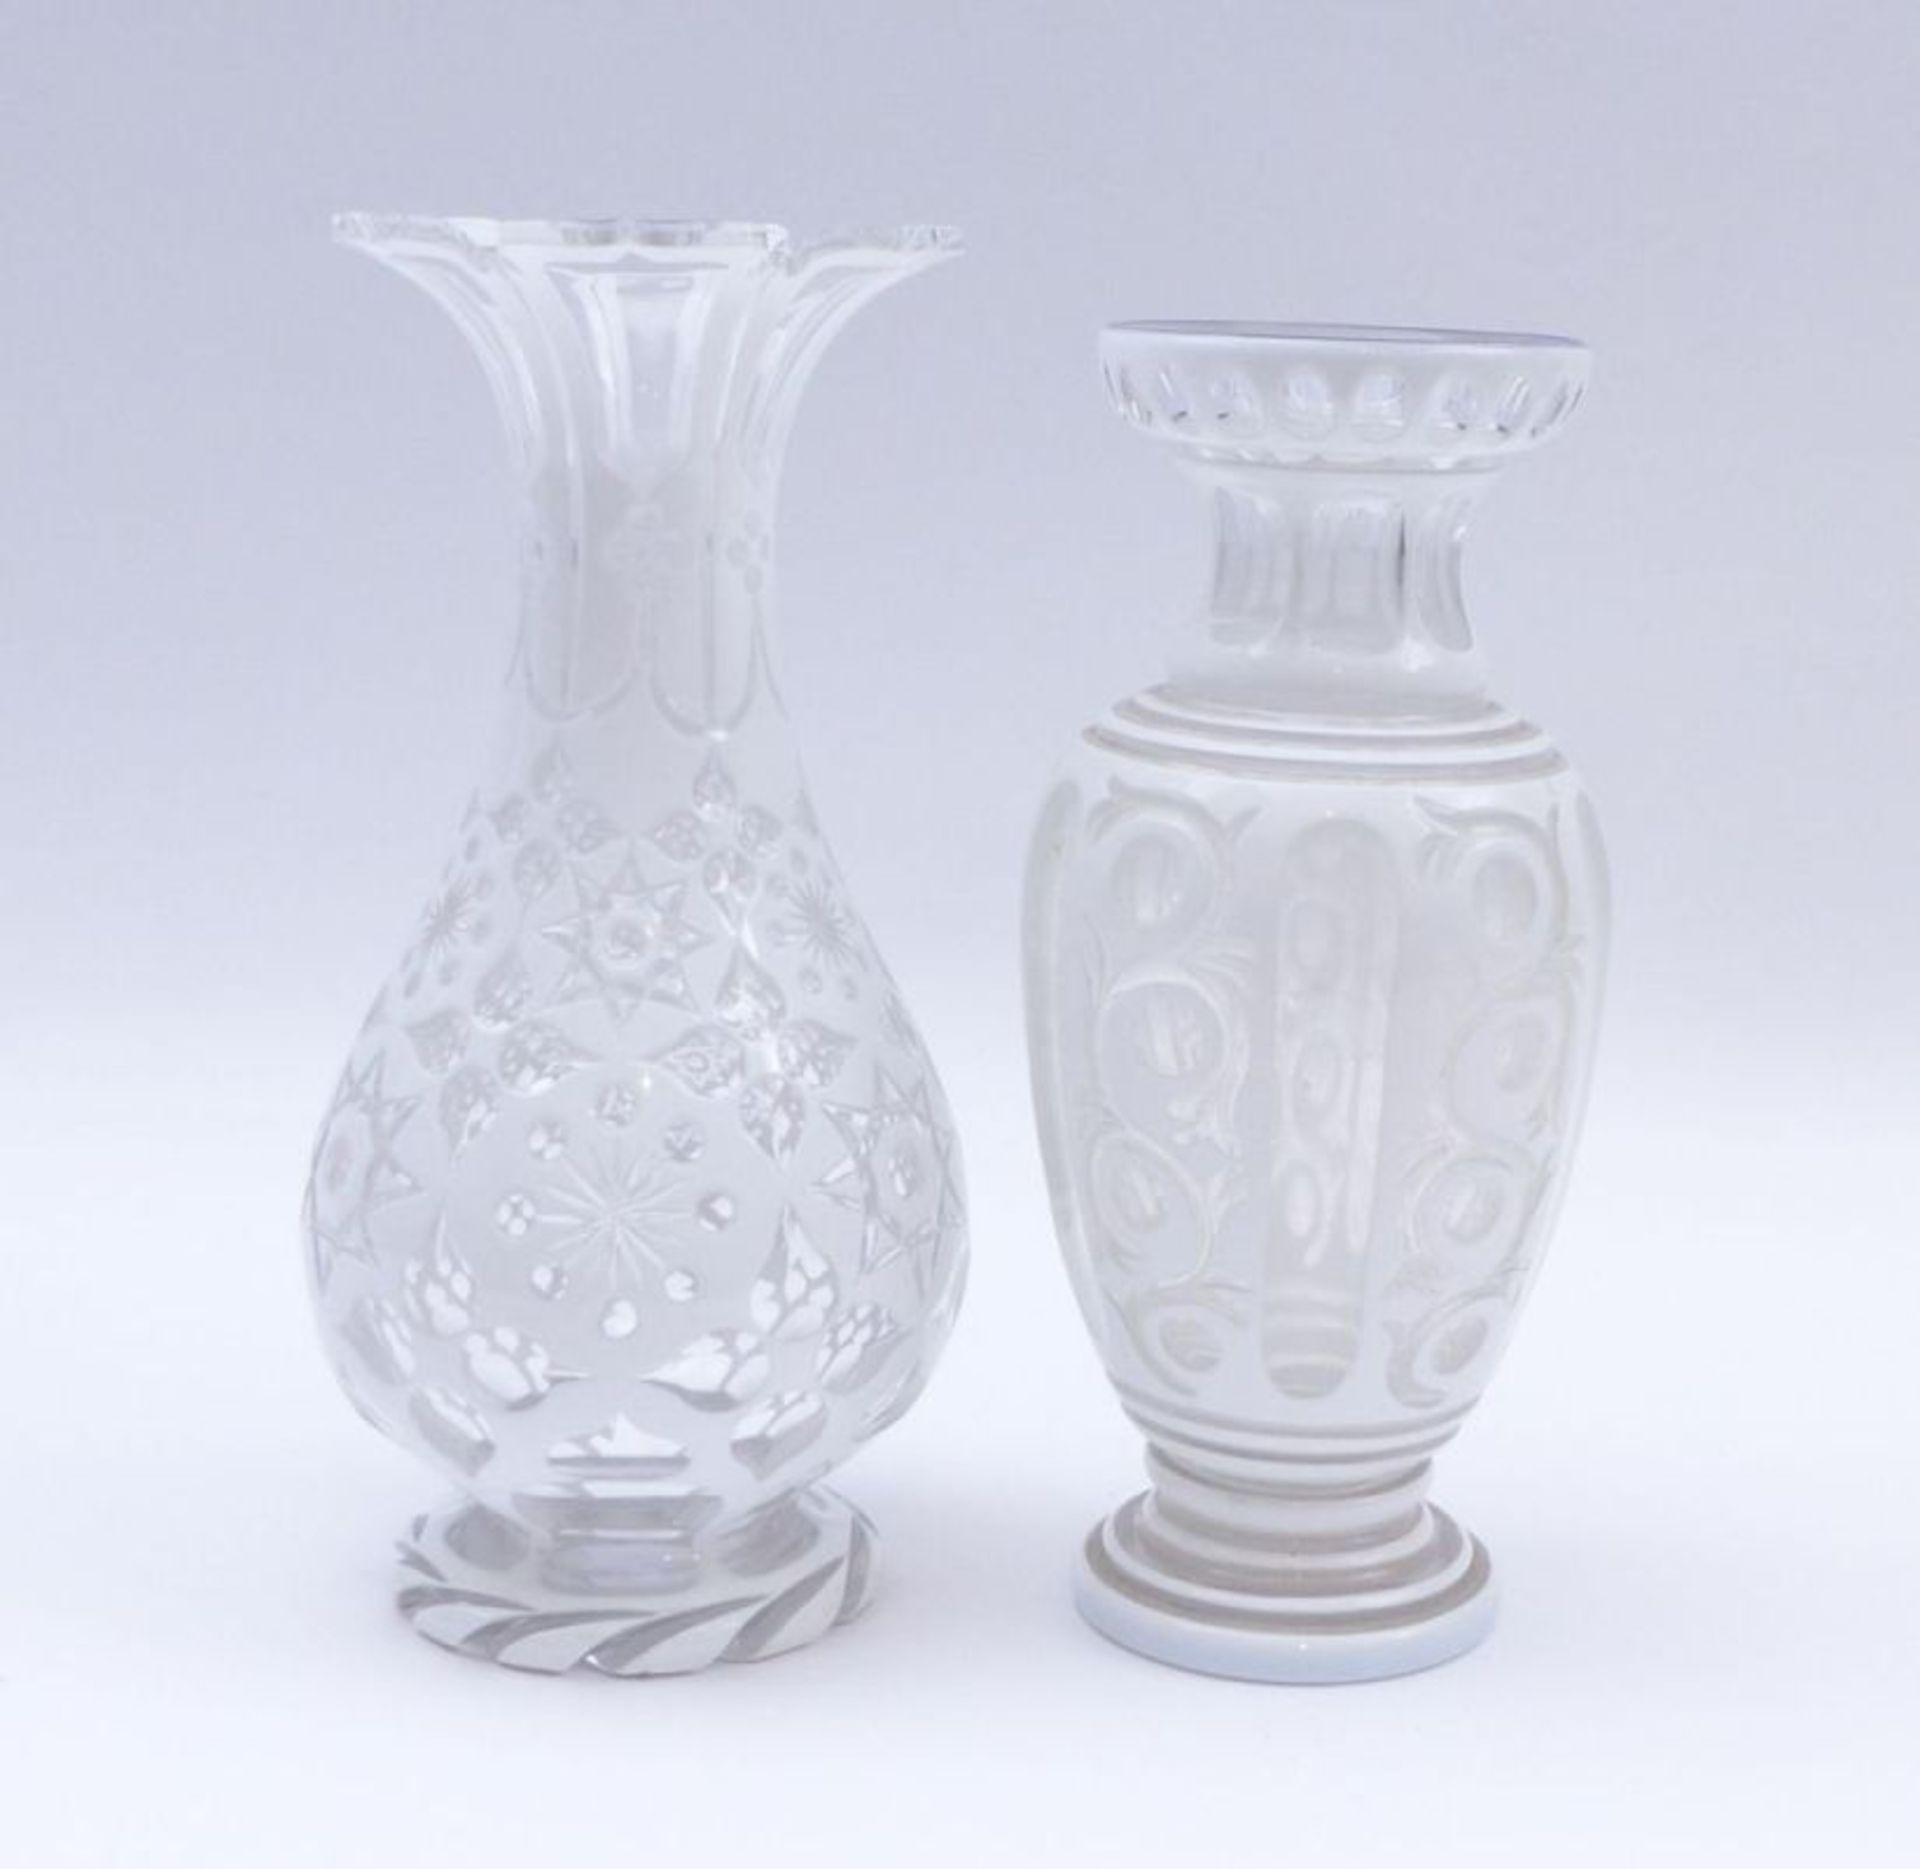 Zwei Vasen mit weißem Emaildekor, Böhmen, 20. Jh. - Image 3 of 3